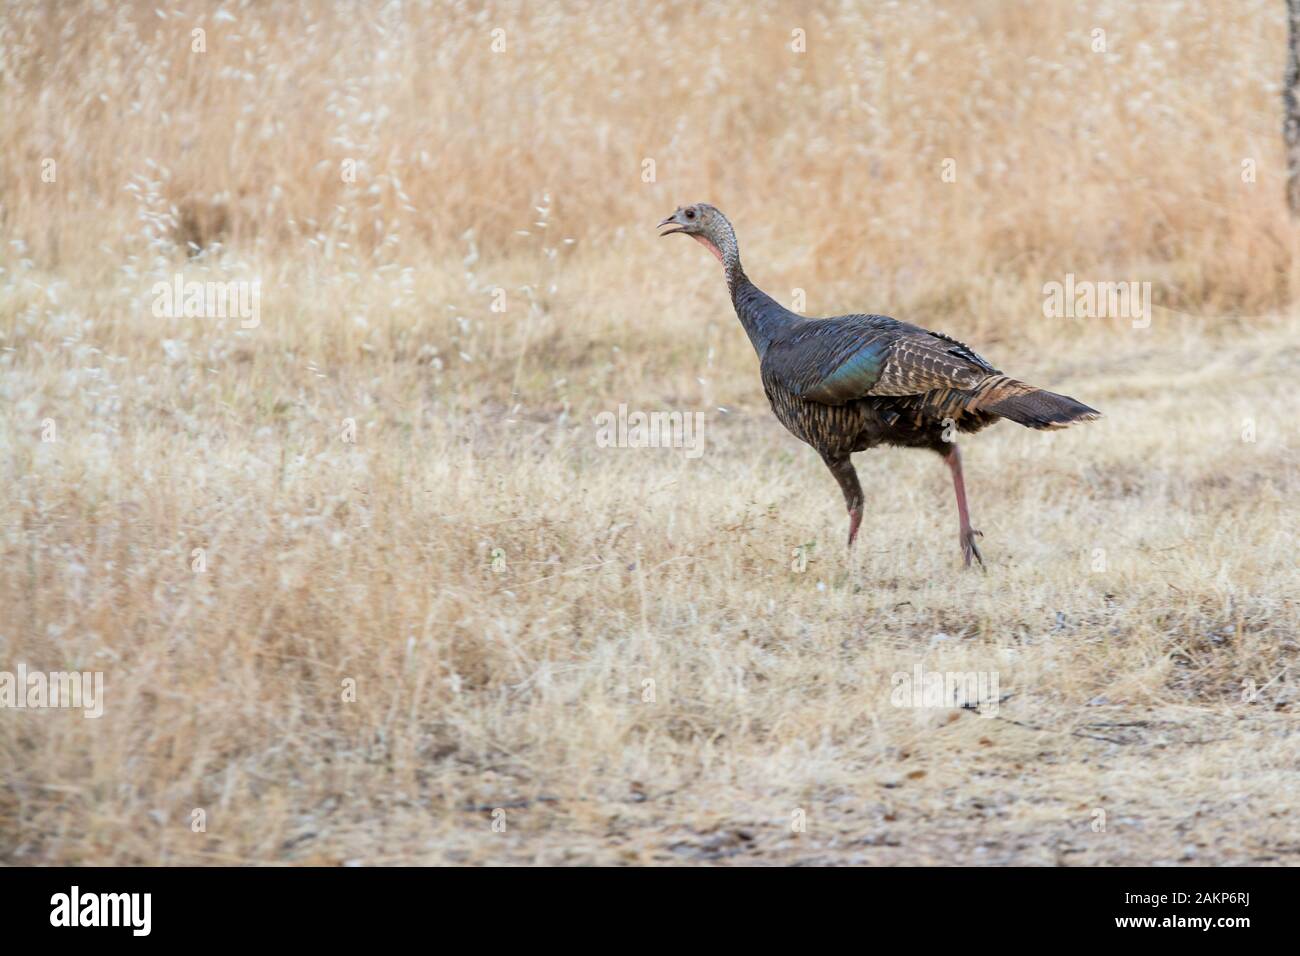 Wild turkey running through grasslands Stock Photo